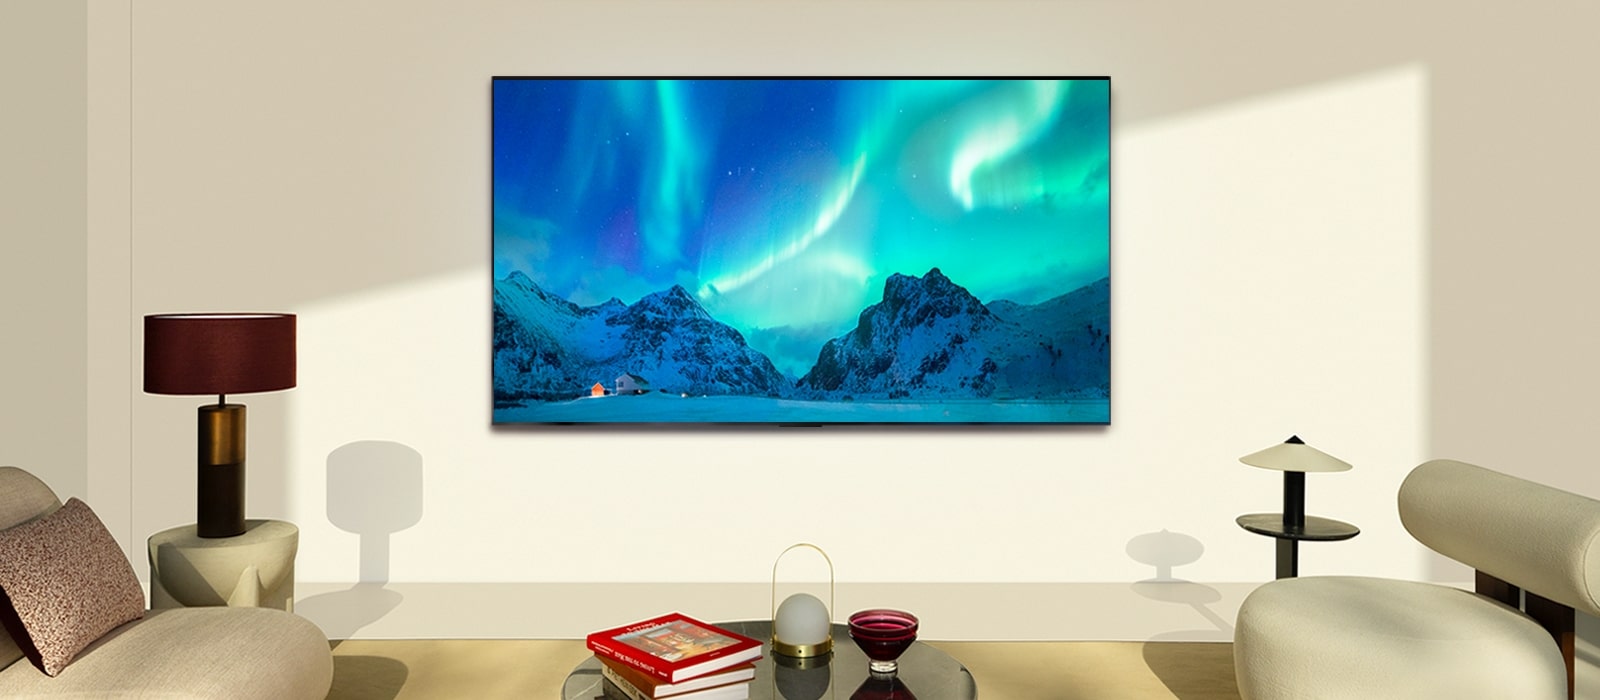 LG OLED TV في غرفة معيشة عصرية خلال النهار. صورة الشفق القطبي تظهر على الشاشة بمستويات السطوع المثالية.